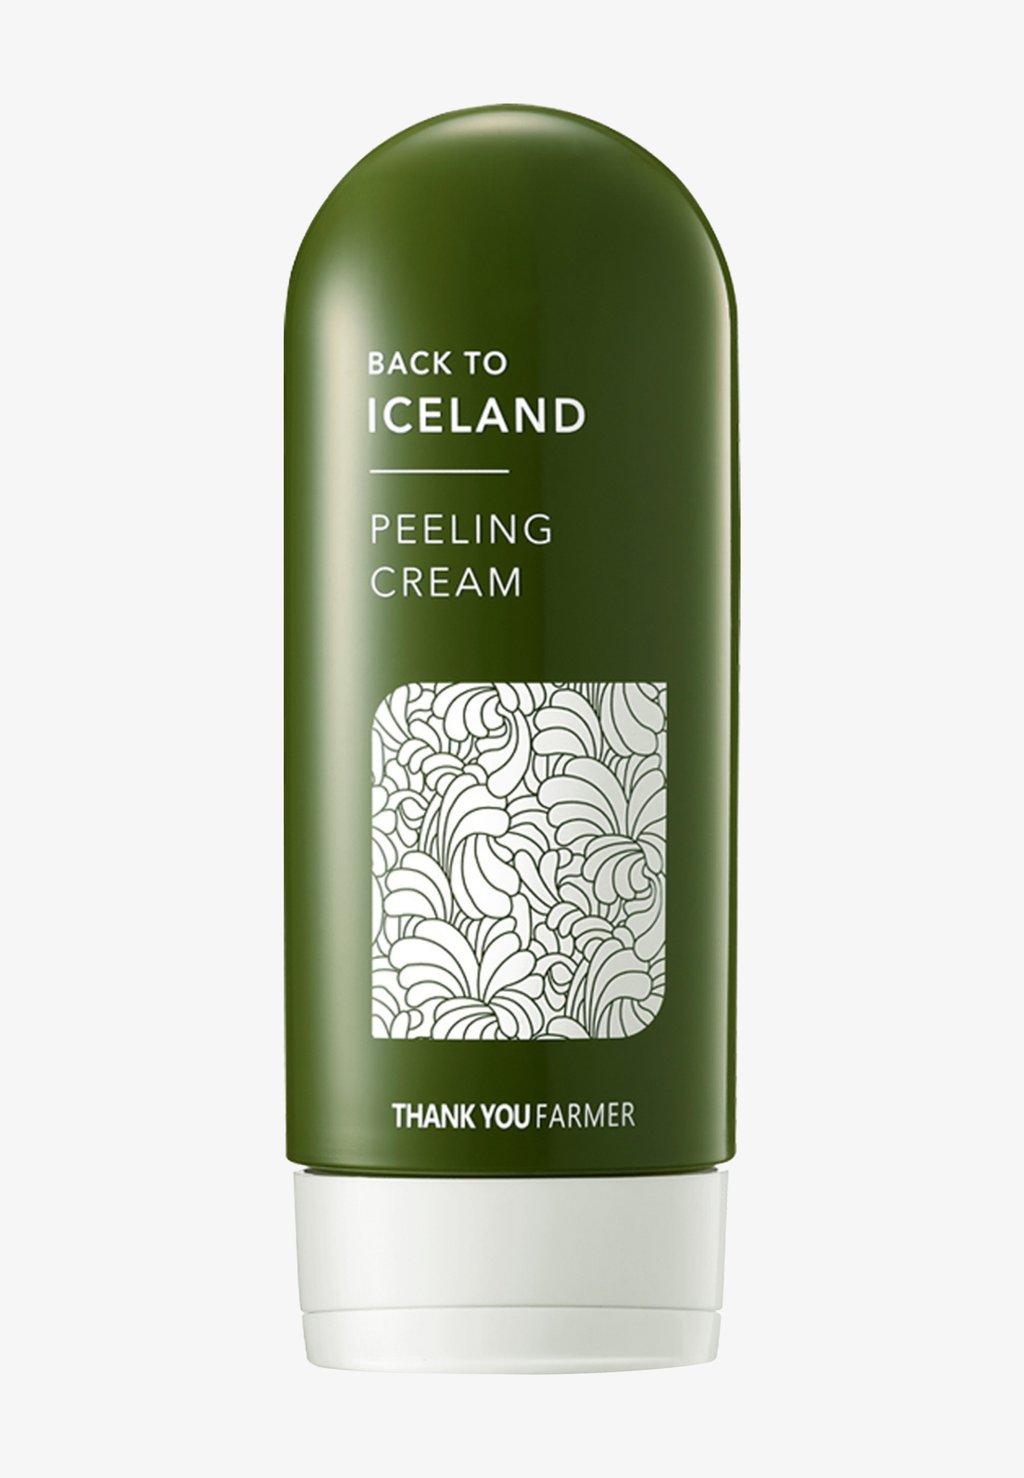 пилинг для лица thank you farmer крем пилинг с ледниковой водой для лица back to iceland peeling cream Дневной крем Back To Iceland Peeling Cream Thank You Farmer